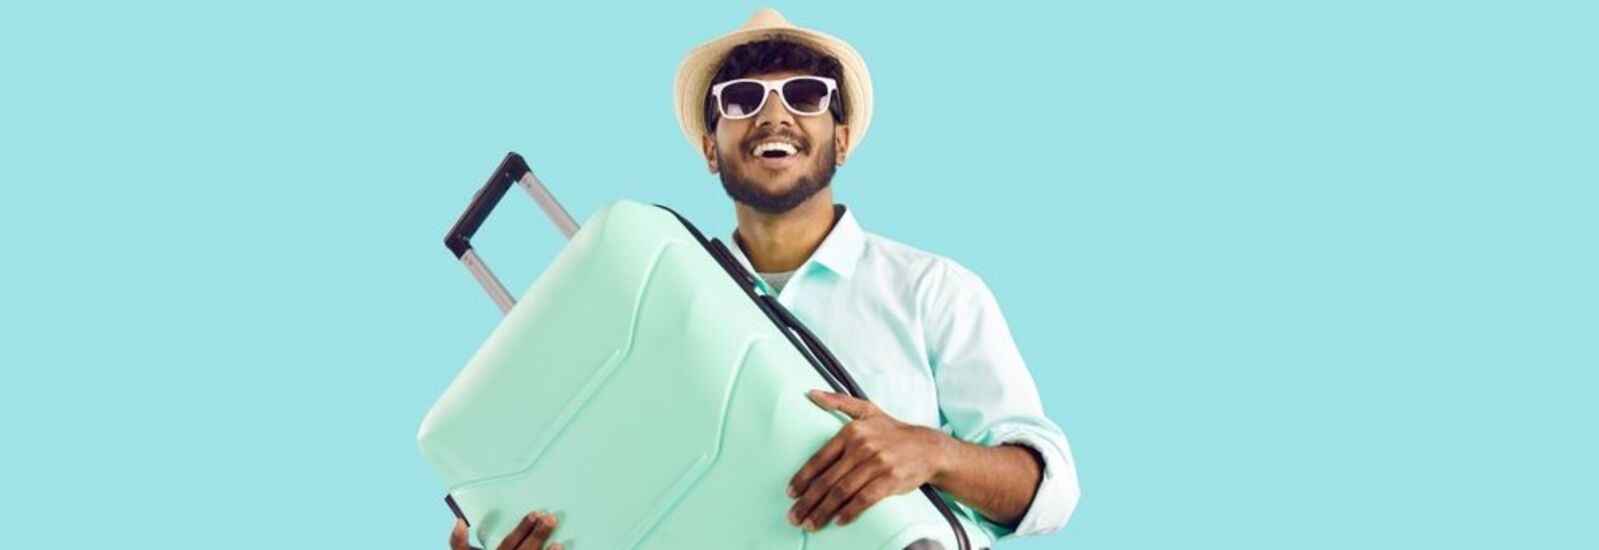 Man smiling holding light blue luggage